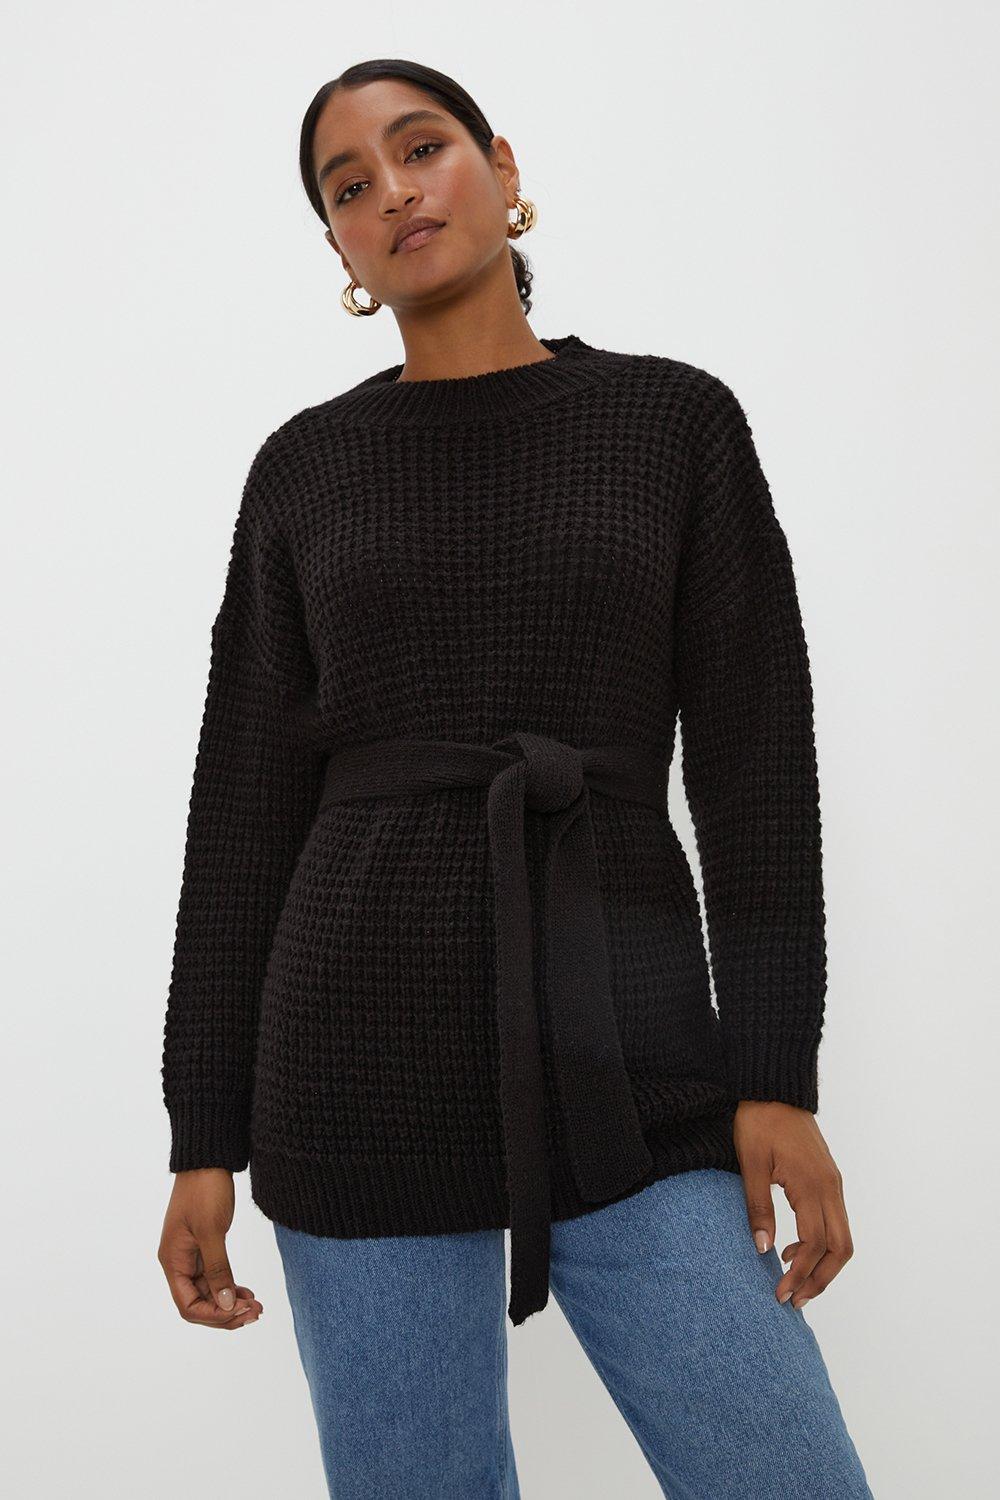 Women’s Belted Waffle Stitch Soft Knit Tunic - black - XL